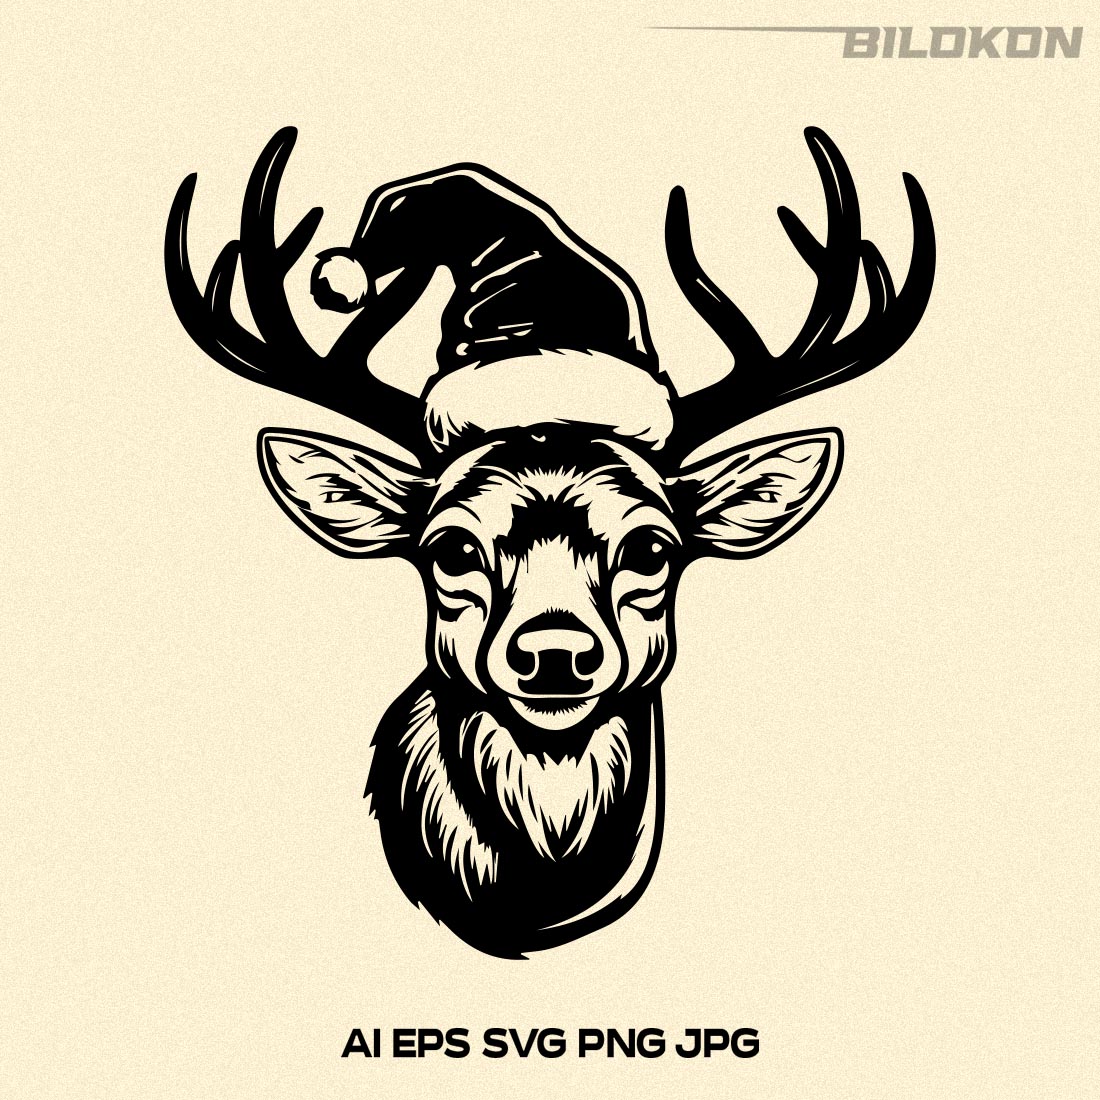 Deer in Santa hat, Christmas Reindeer SVG Vector cover image.